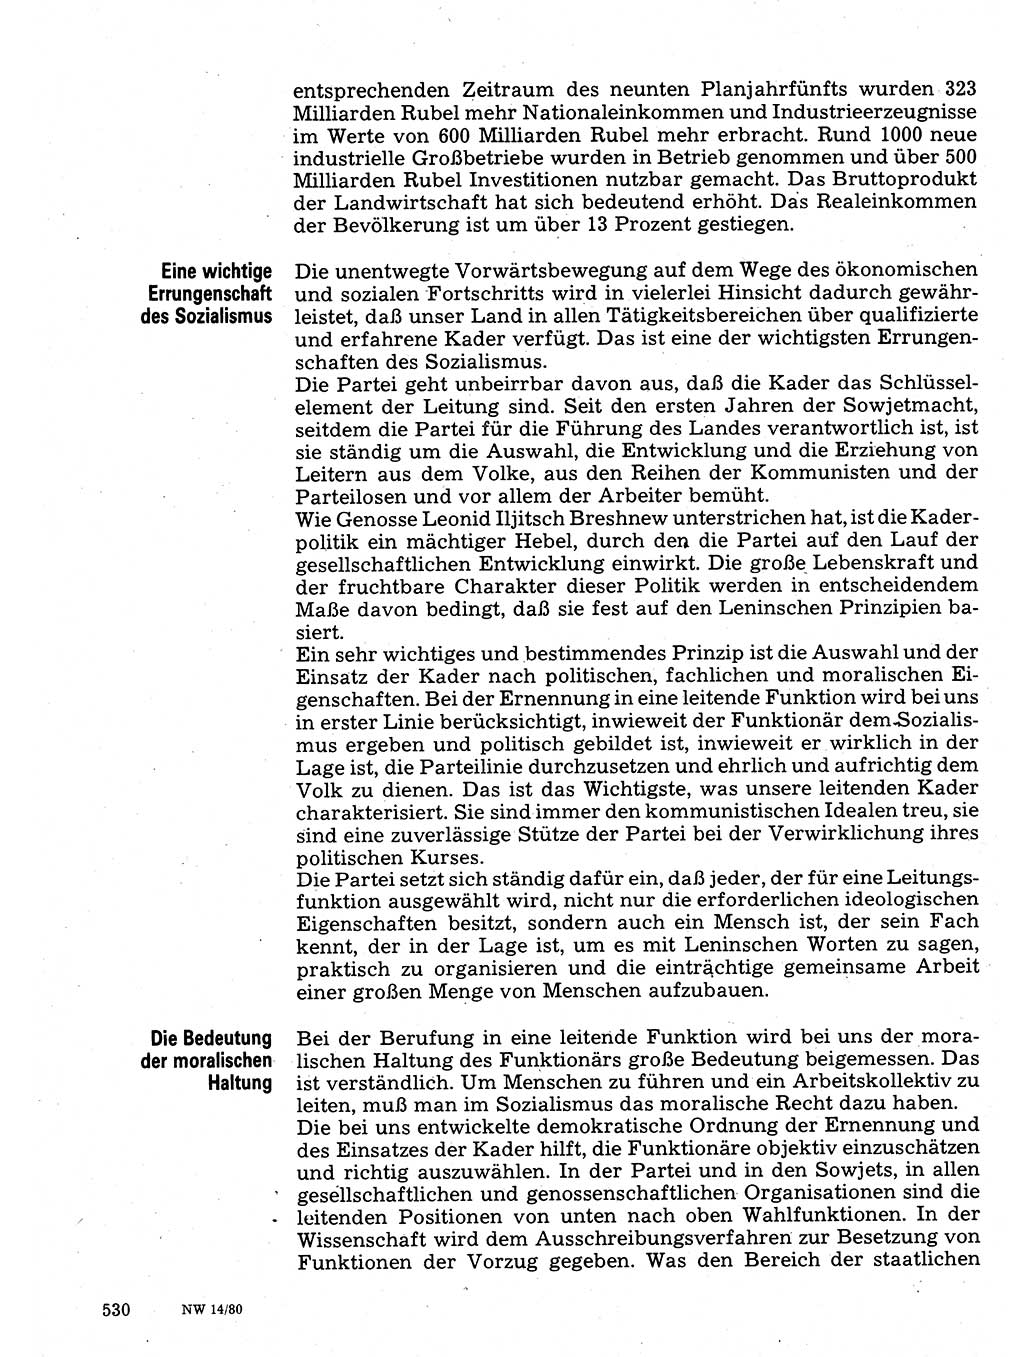 Neuer Weg (NW), Organ des Zentralkomitees (ZK) der SED (Sozialistische Einheitspartei Deutschlands) für Fragen des Parteilebens, 35. Jahrgang [Deutsche Demokratische Republik (DDR)] 1980, Seite 530 (NW ZK SED DDR 1980, S. 530)